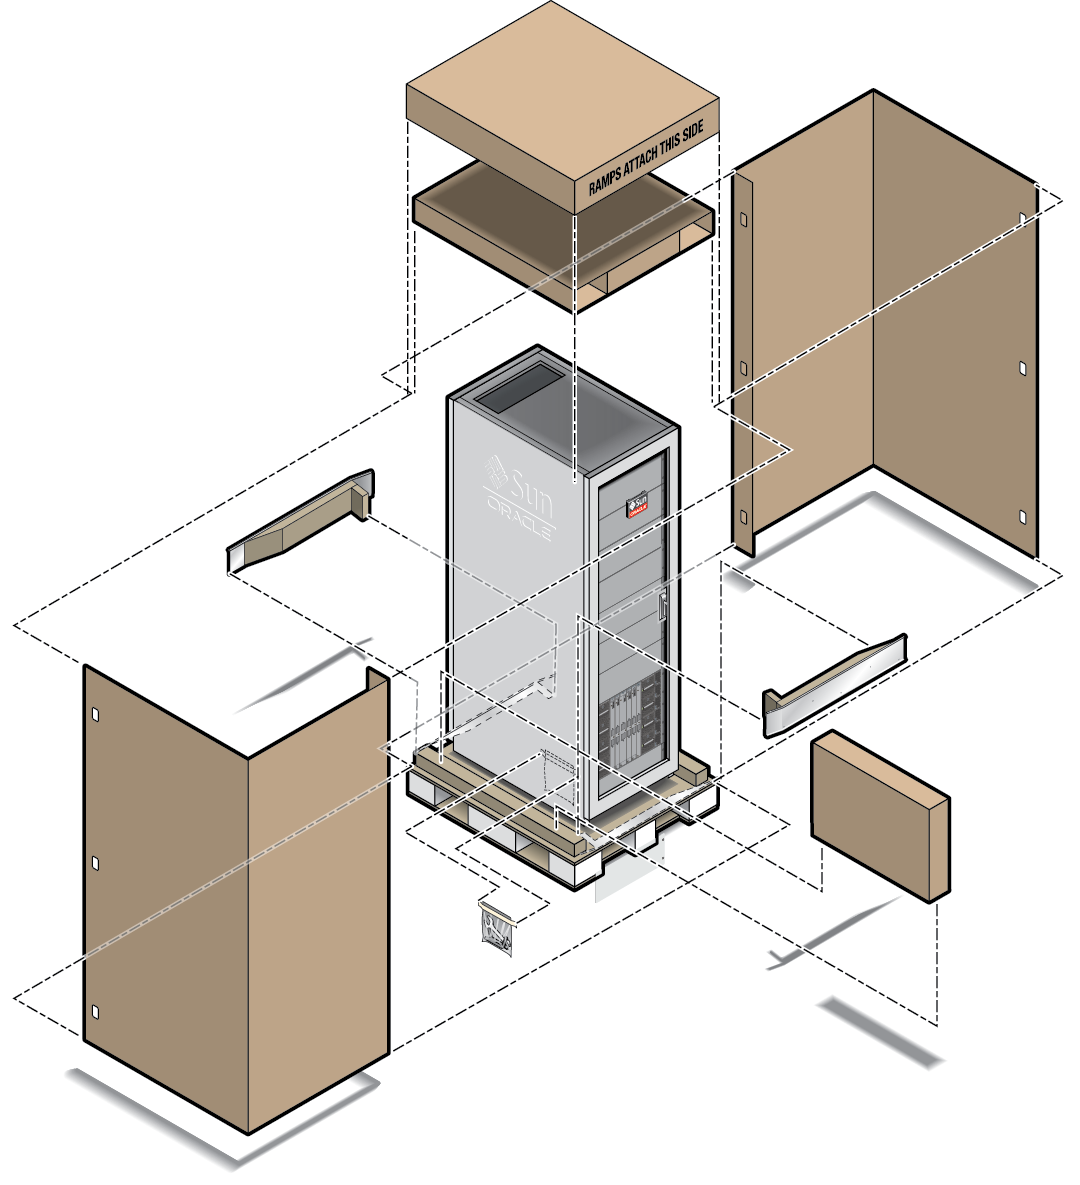 image:Figure montrant les principaux composants de l'emballage du serveur monté en rack.